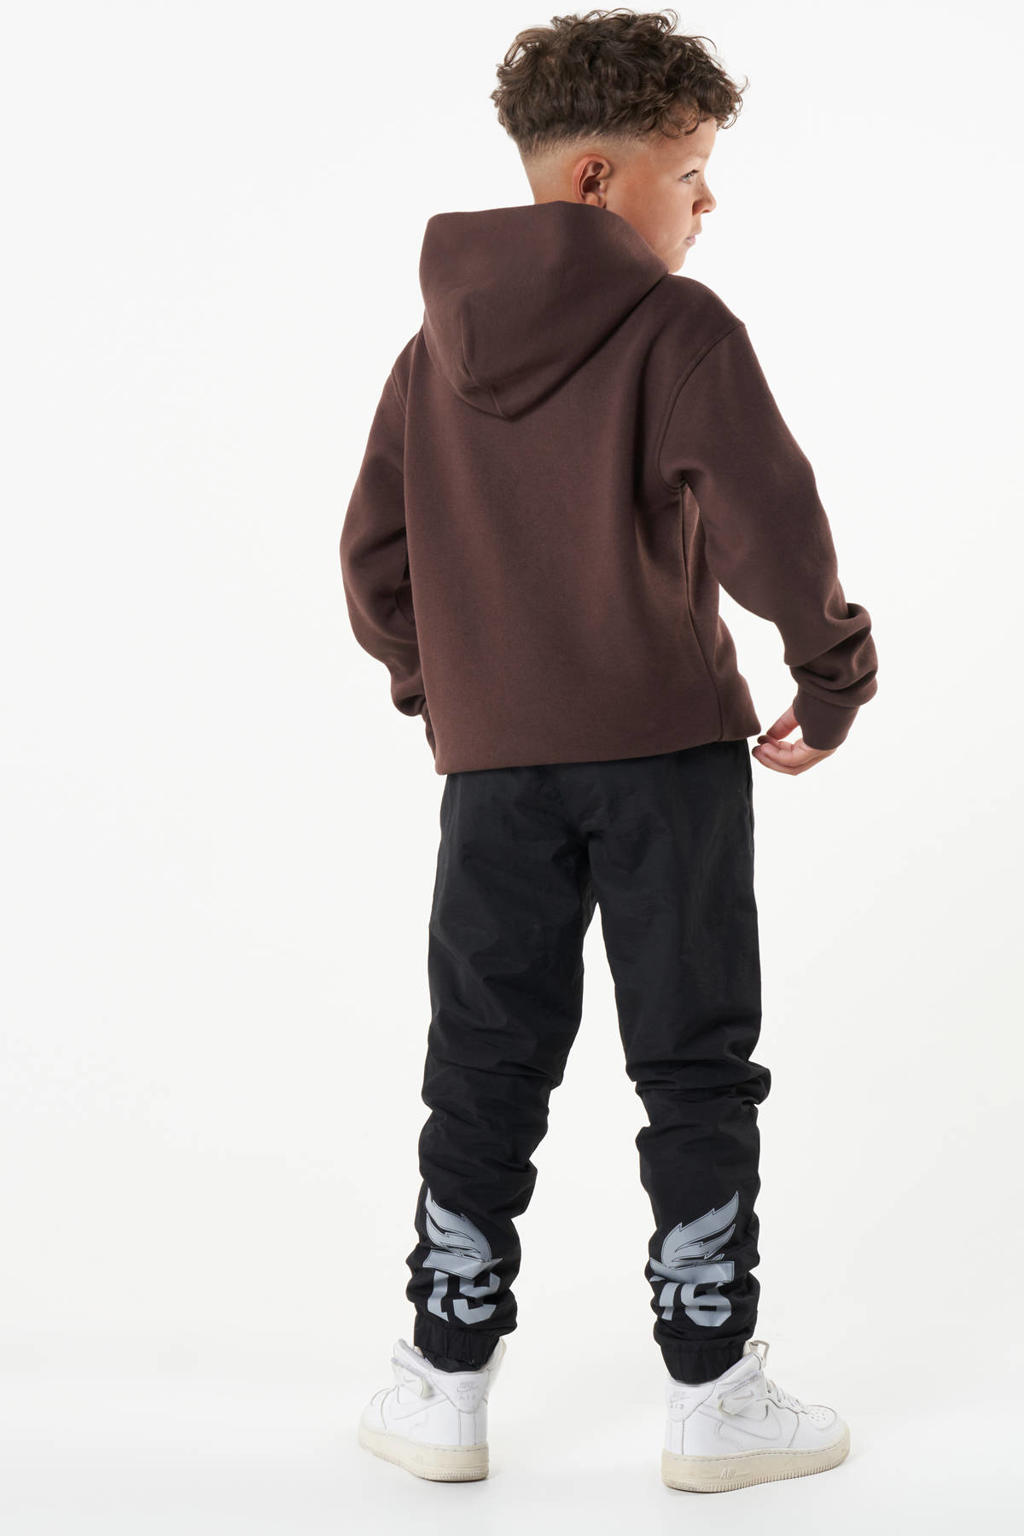 Bruine jongens CoolCat Junior hoodie Sophian van sweat materiaal met printopdruk, lange mouwen, capuchon en tunnelkoord